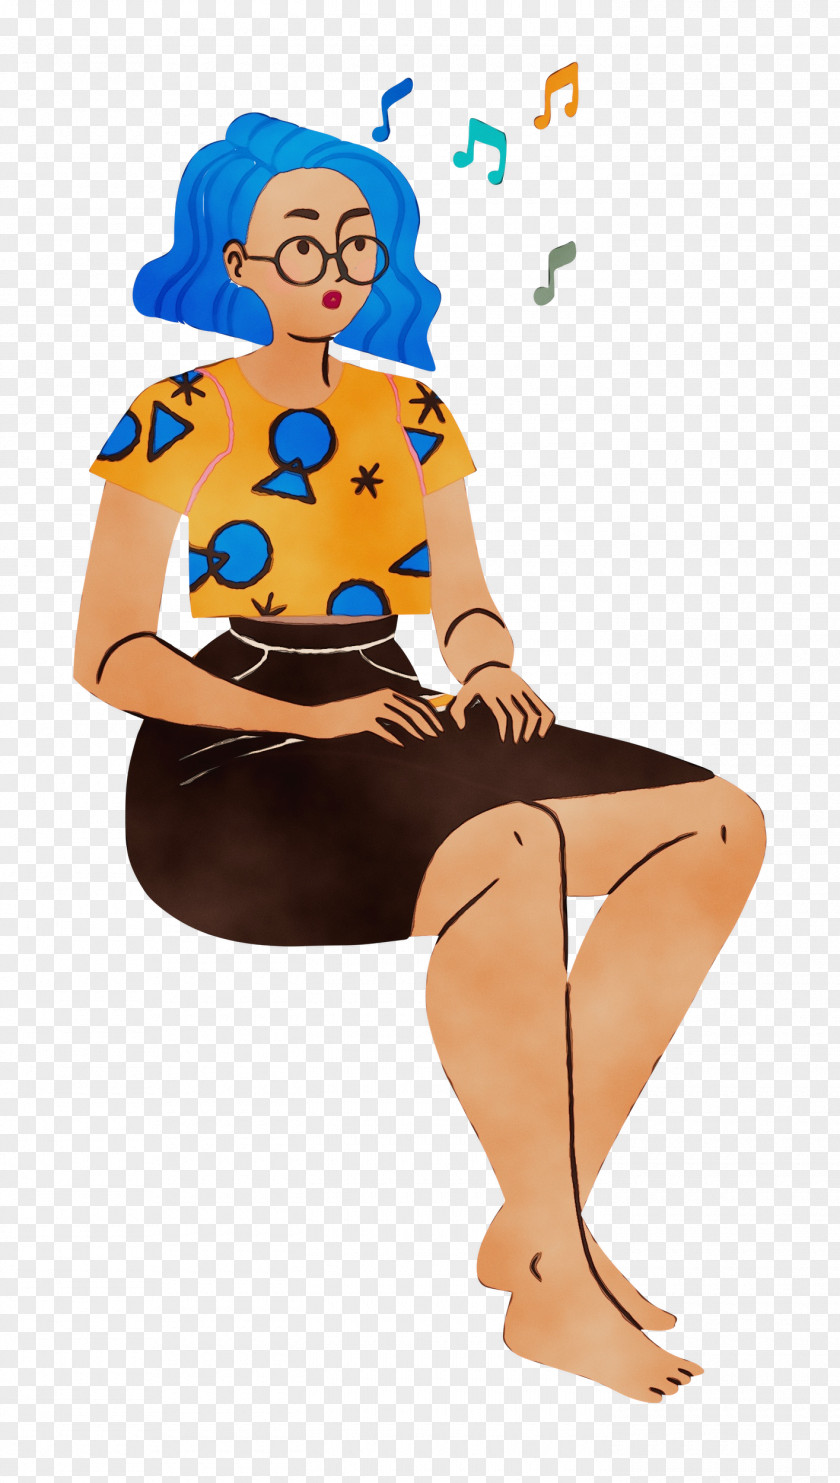 Cartoon Character Pin-up Girl Sitting PNG